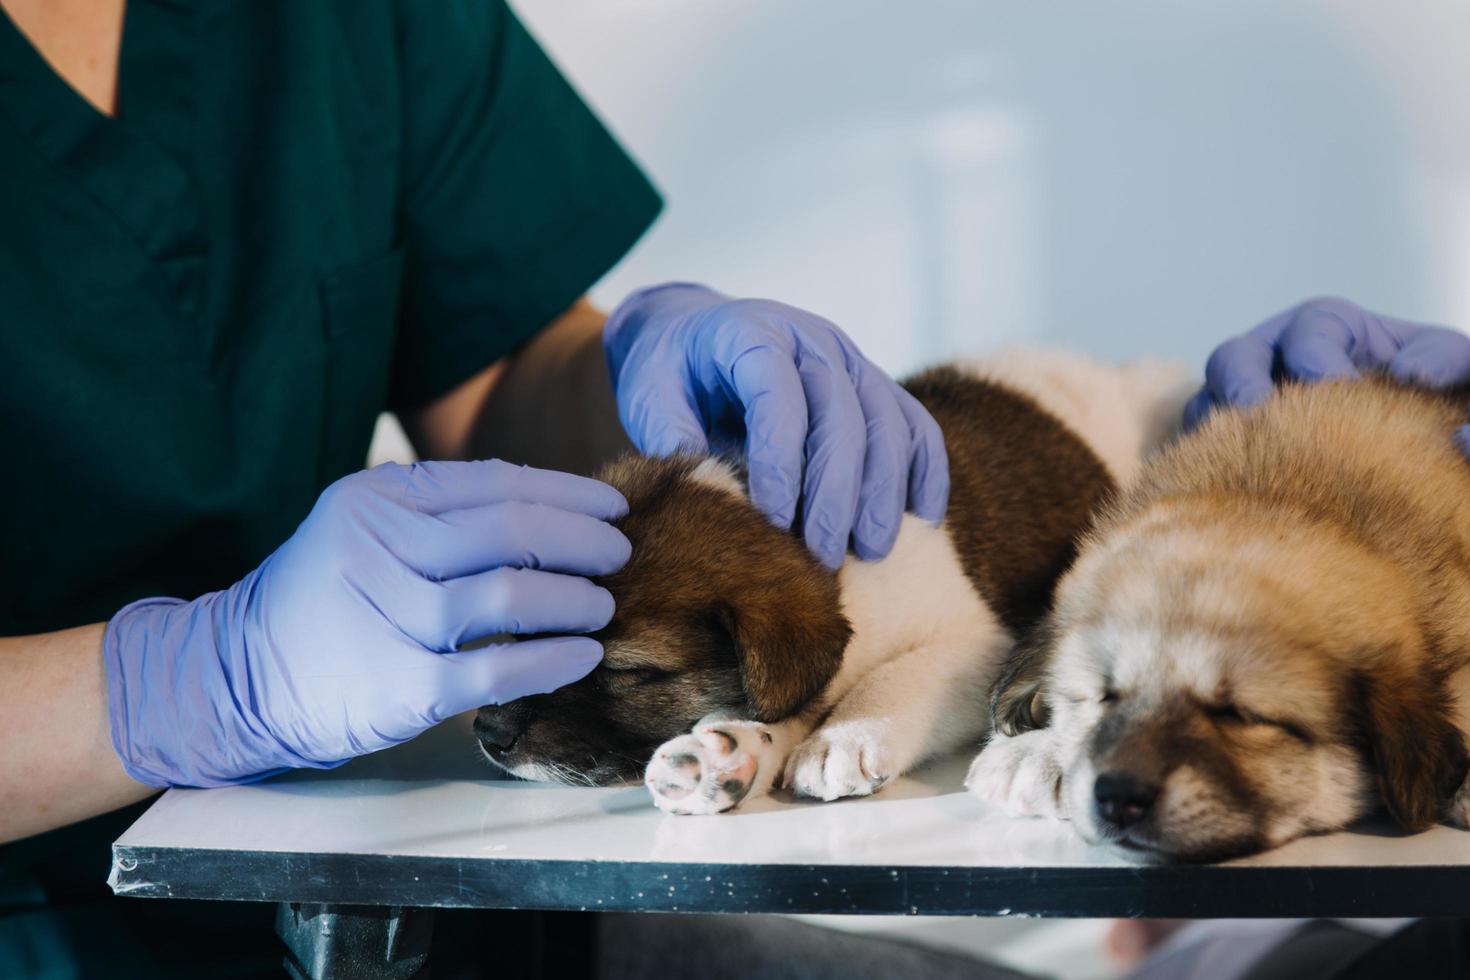 comprobando la respiración. veterinario masculino con uniforme de trabajo escuchando el aliento de un perro pequeño con un fonendoscopio en una clínica veterinaria. concepto de cuidado de mascotas foto